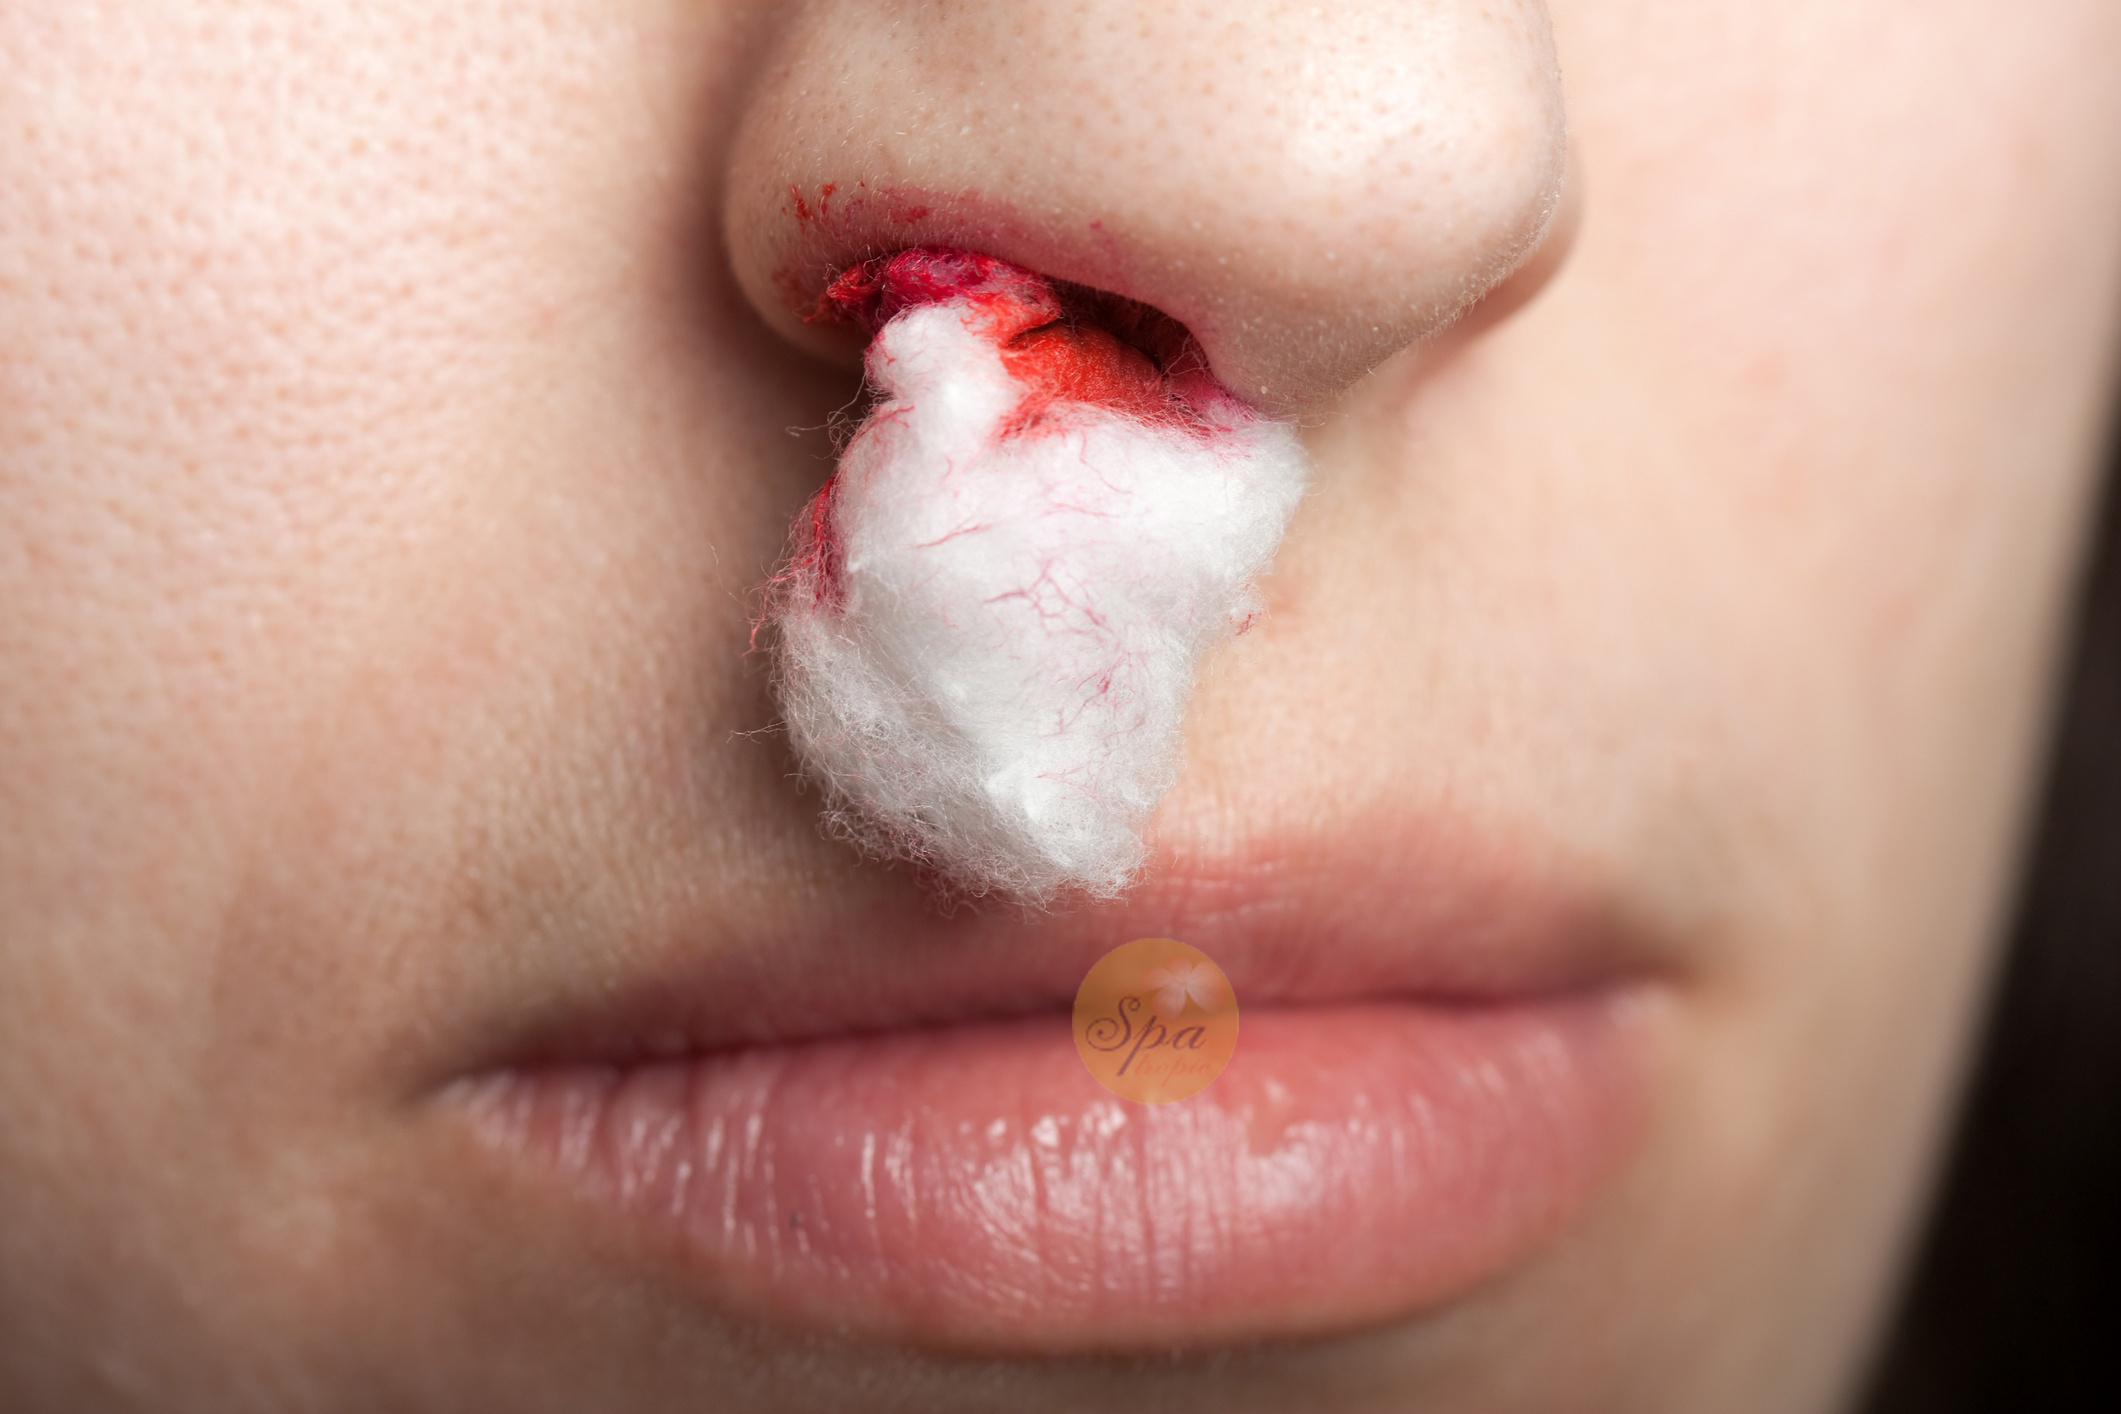 Mũi chảy máu là dấu hiệu có thể xảy ra sau nâng mũi, bạn cần đến bác sĩ càng sớm càng tốt nếu gặp phải